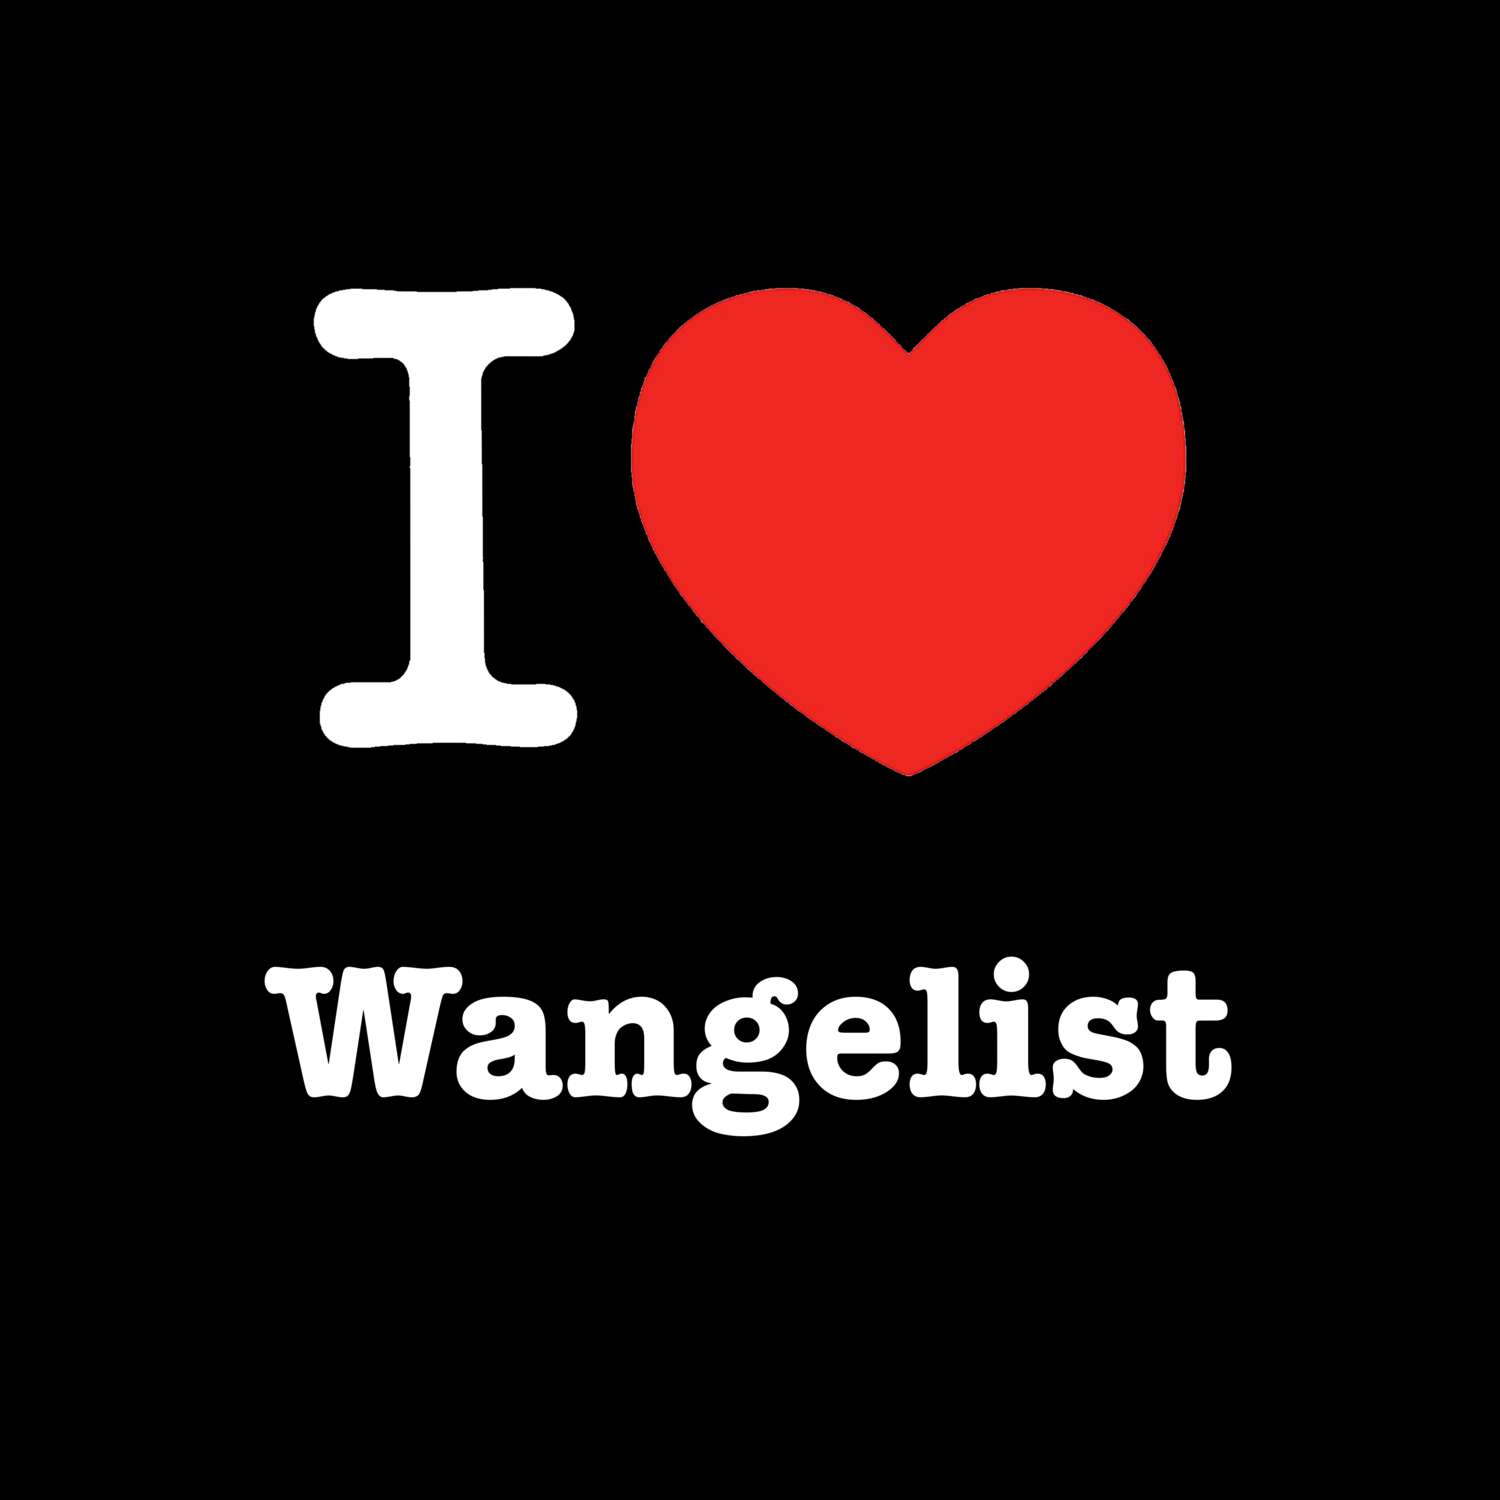 Wangelist T-Shirt »I love«